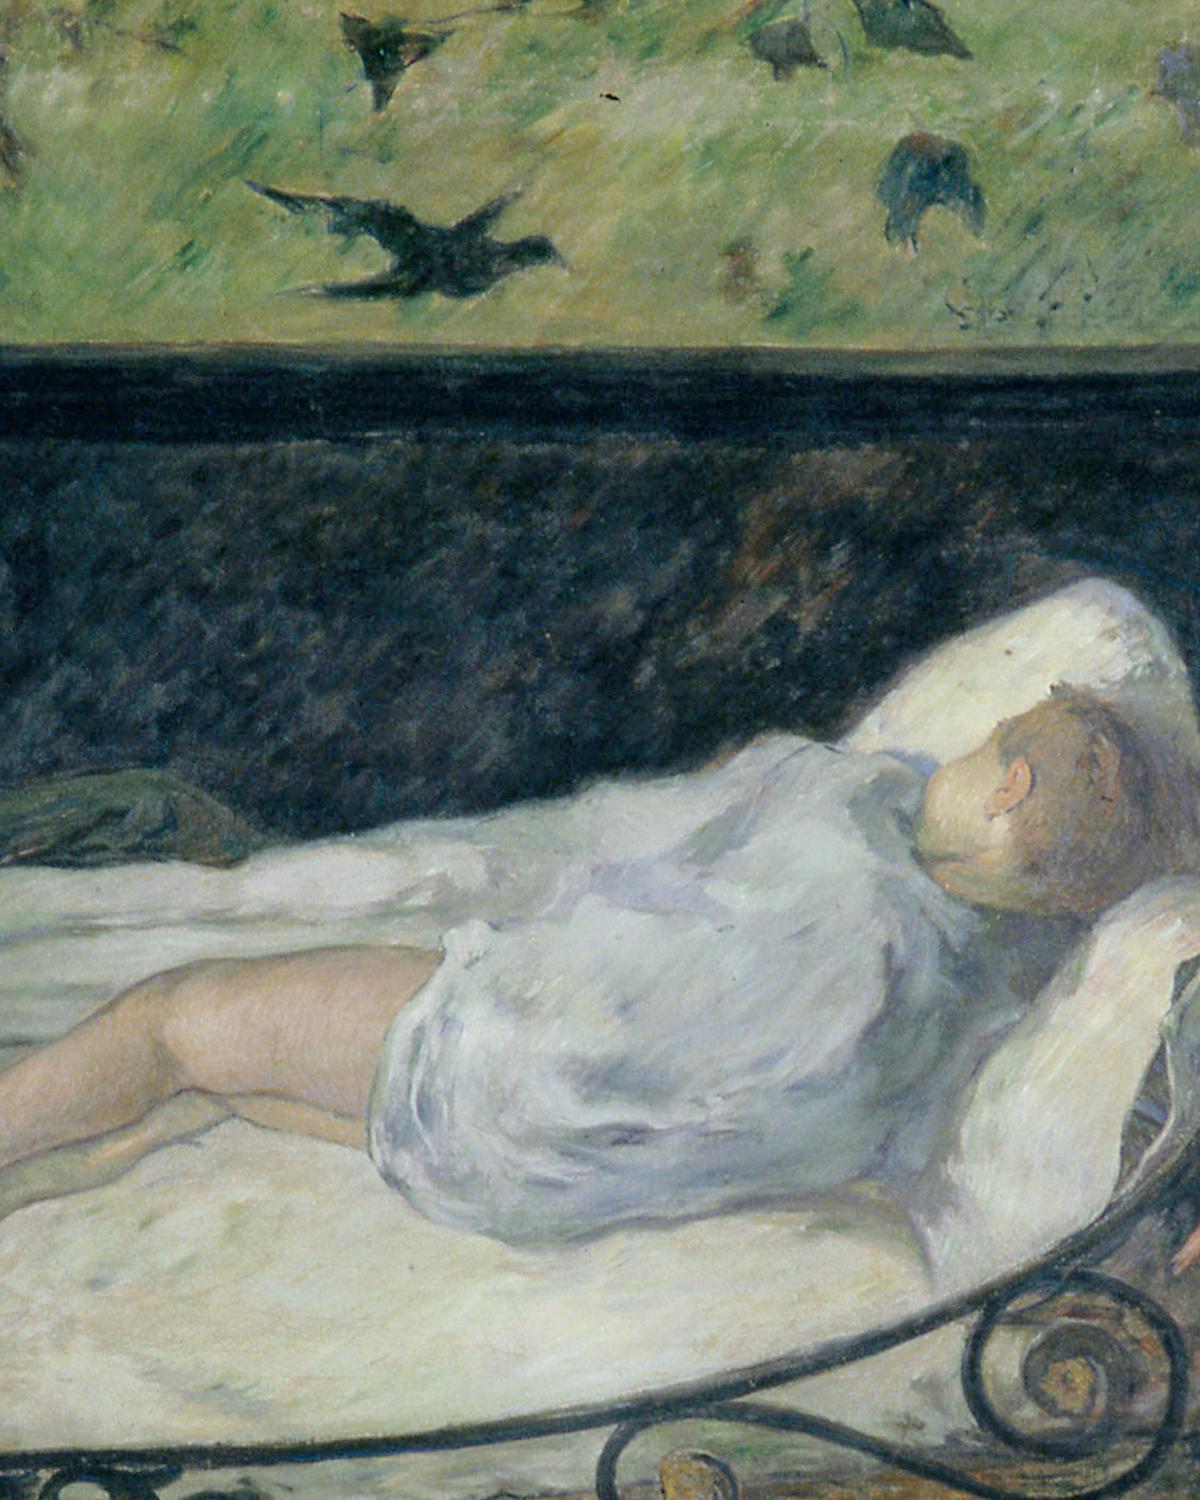 دانلود عکس نقاشی خواب آرام اثر معروف پل گوگن نقاش مشهور فرانسوی 